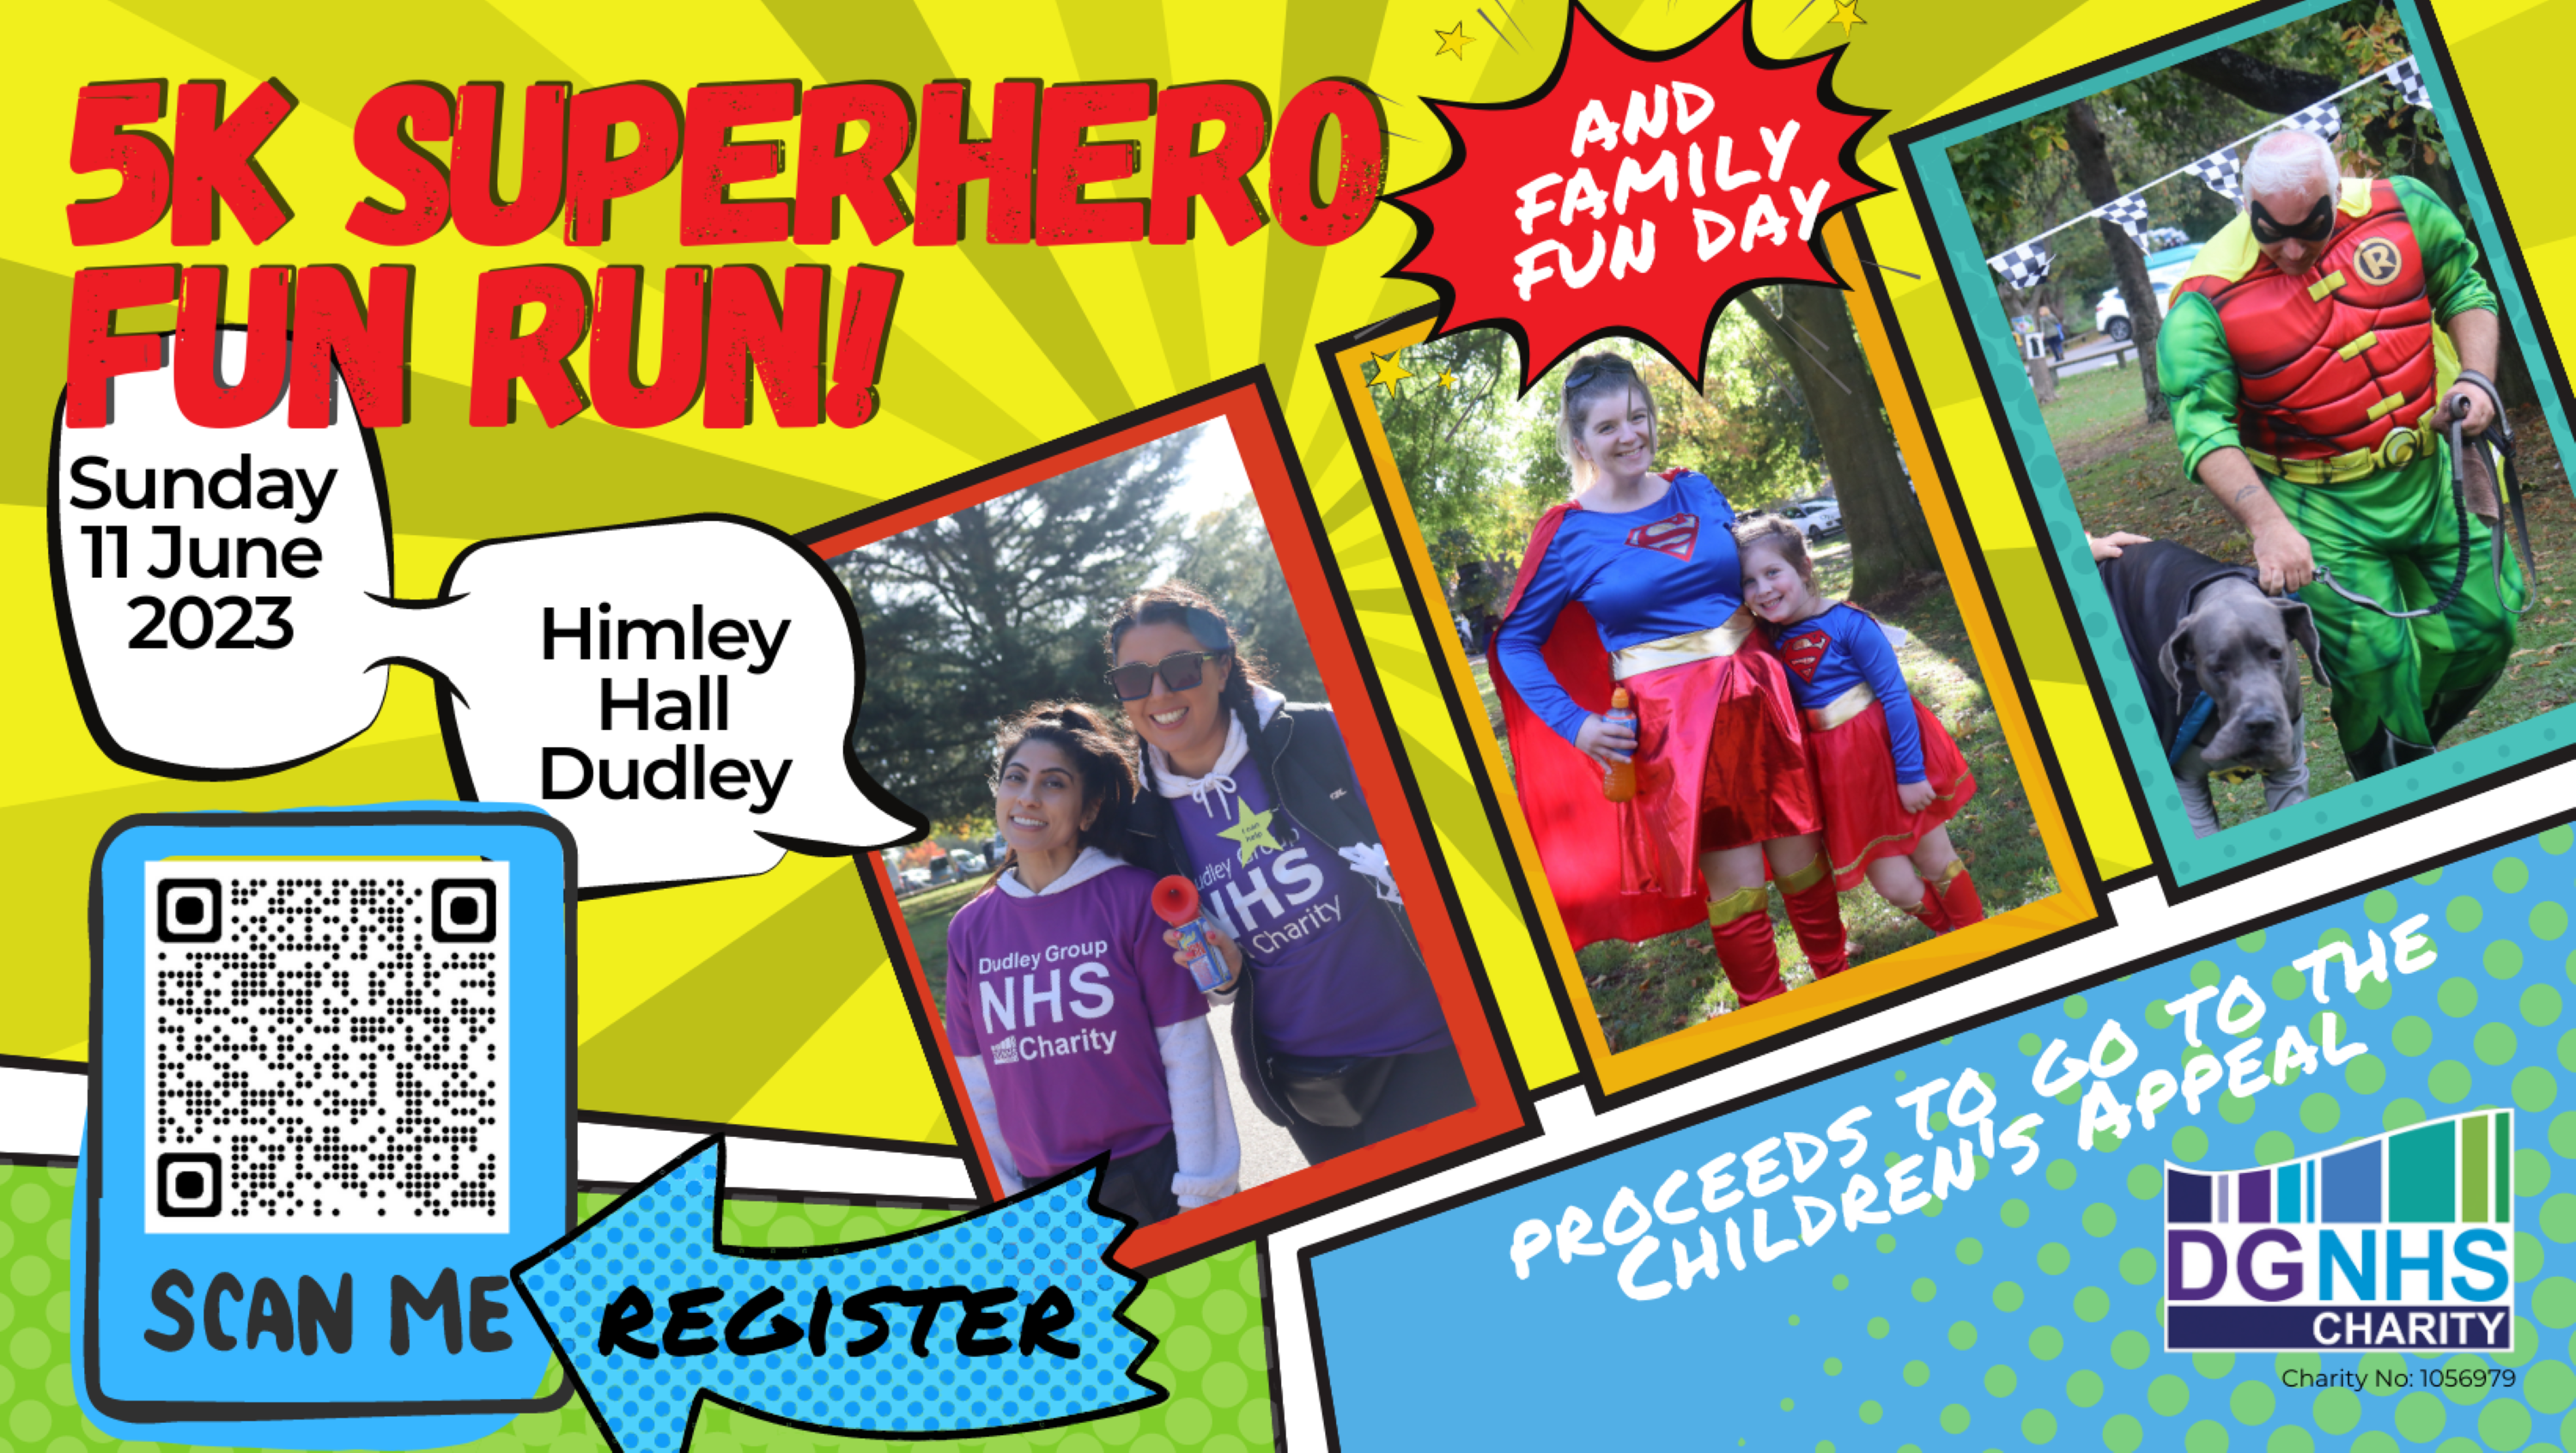 Image for Charity Superhero Fun Run and Family Fun Day